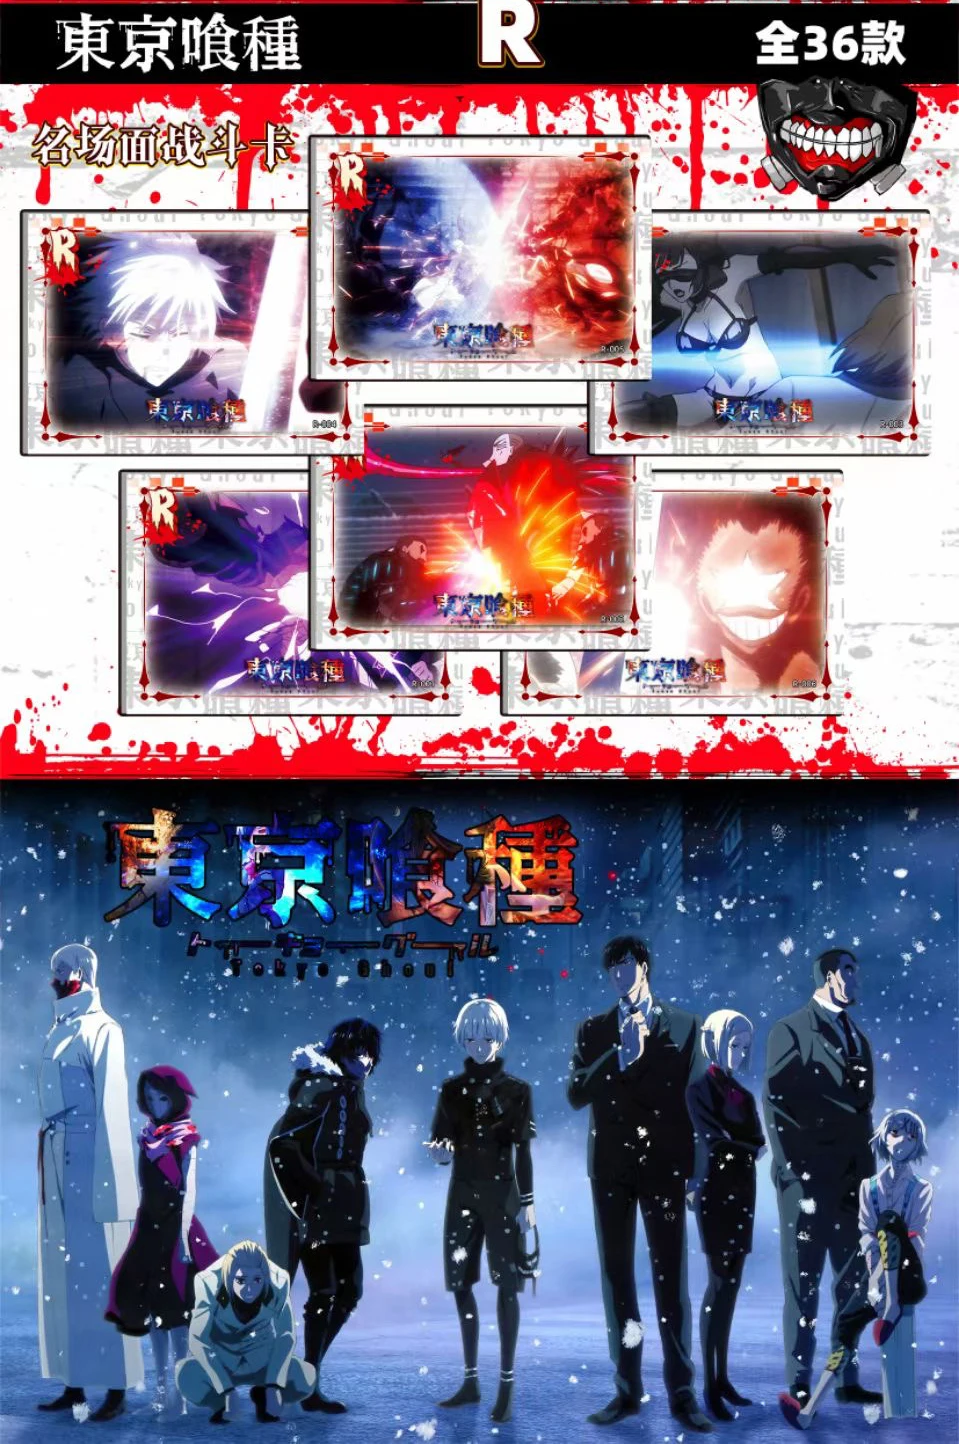 Funimation: Tokyo Ghoul:re, Fruits Basket e Sword Art Online para o  catálogo brasileiro – ANMTV